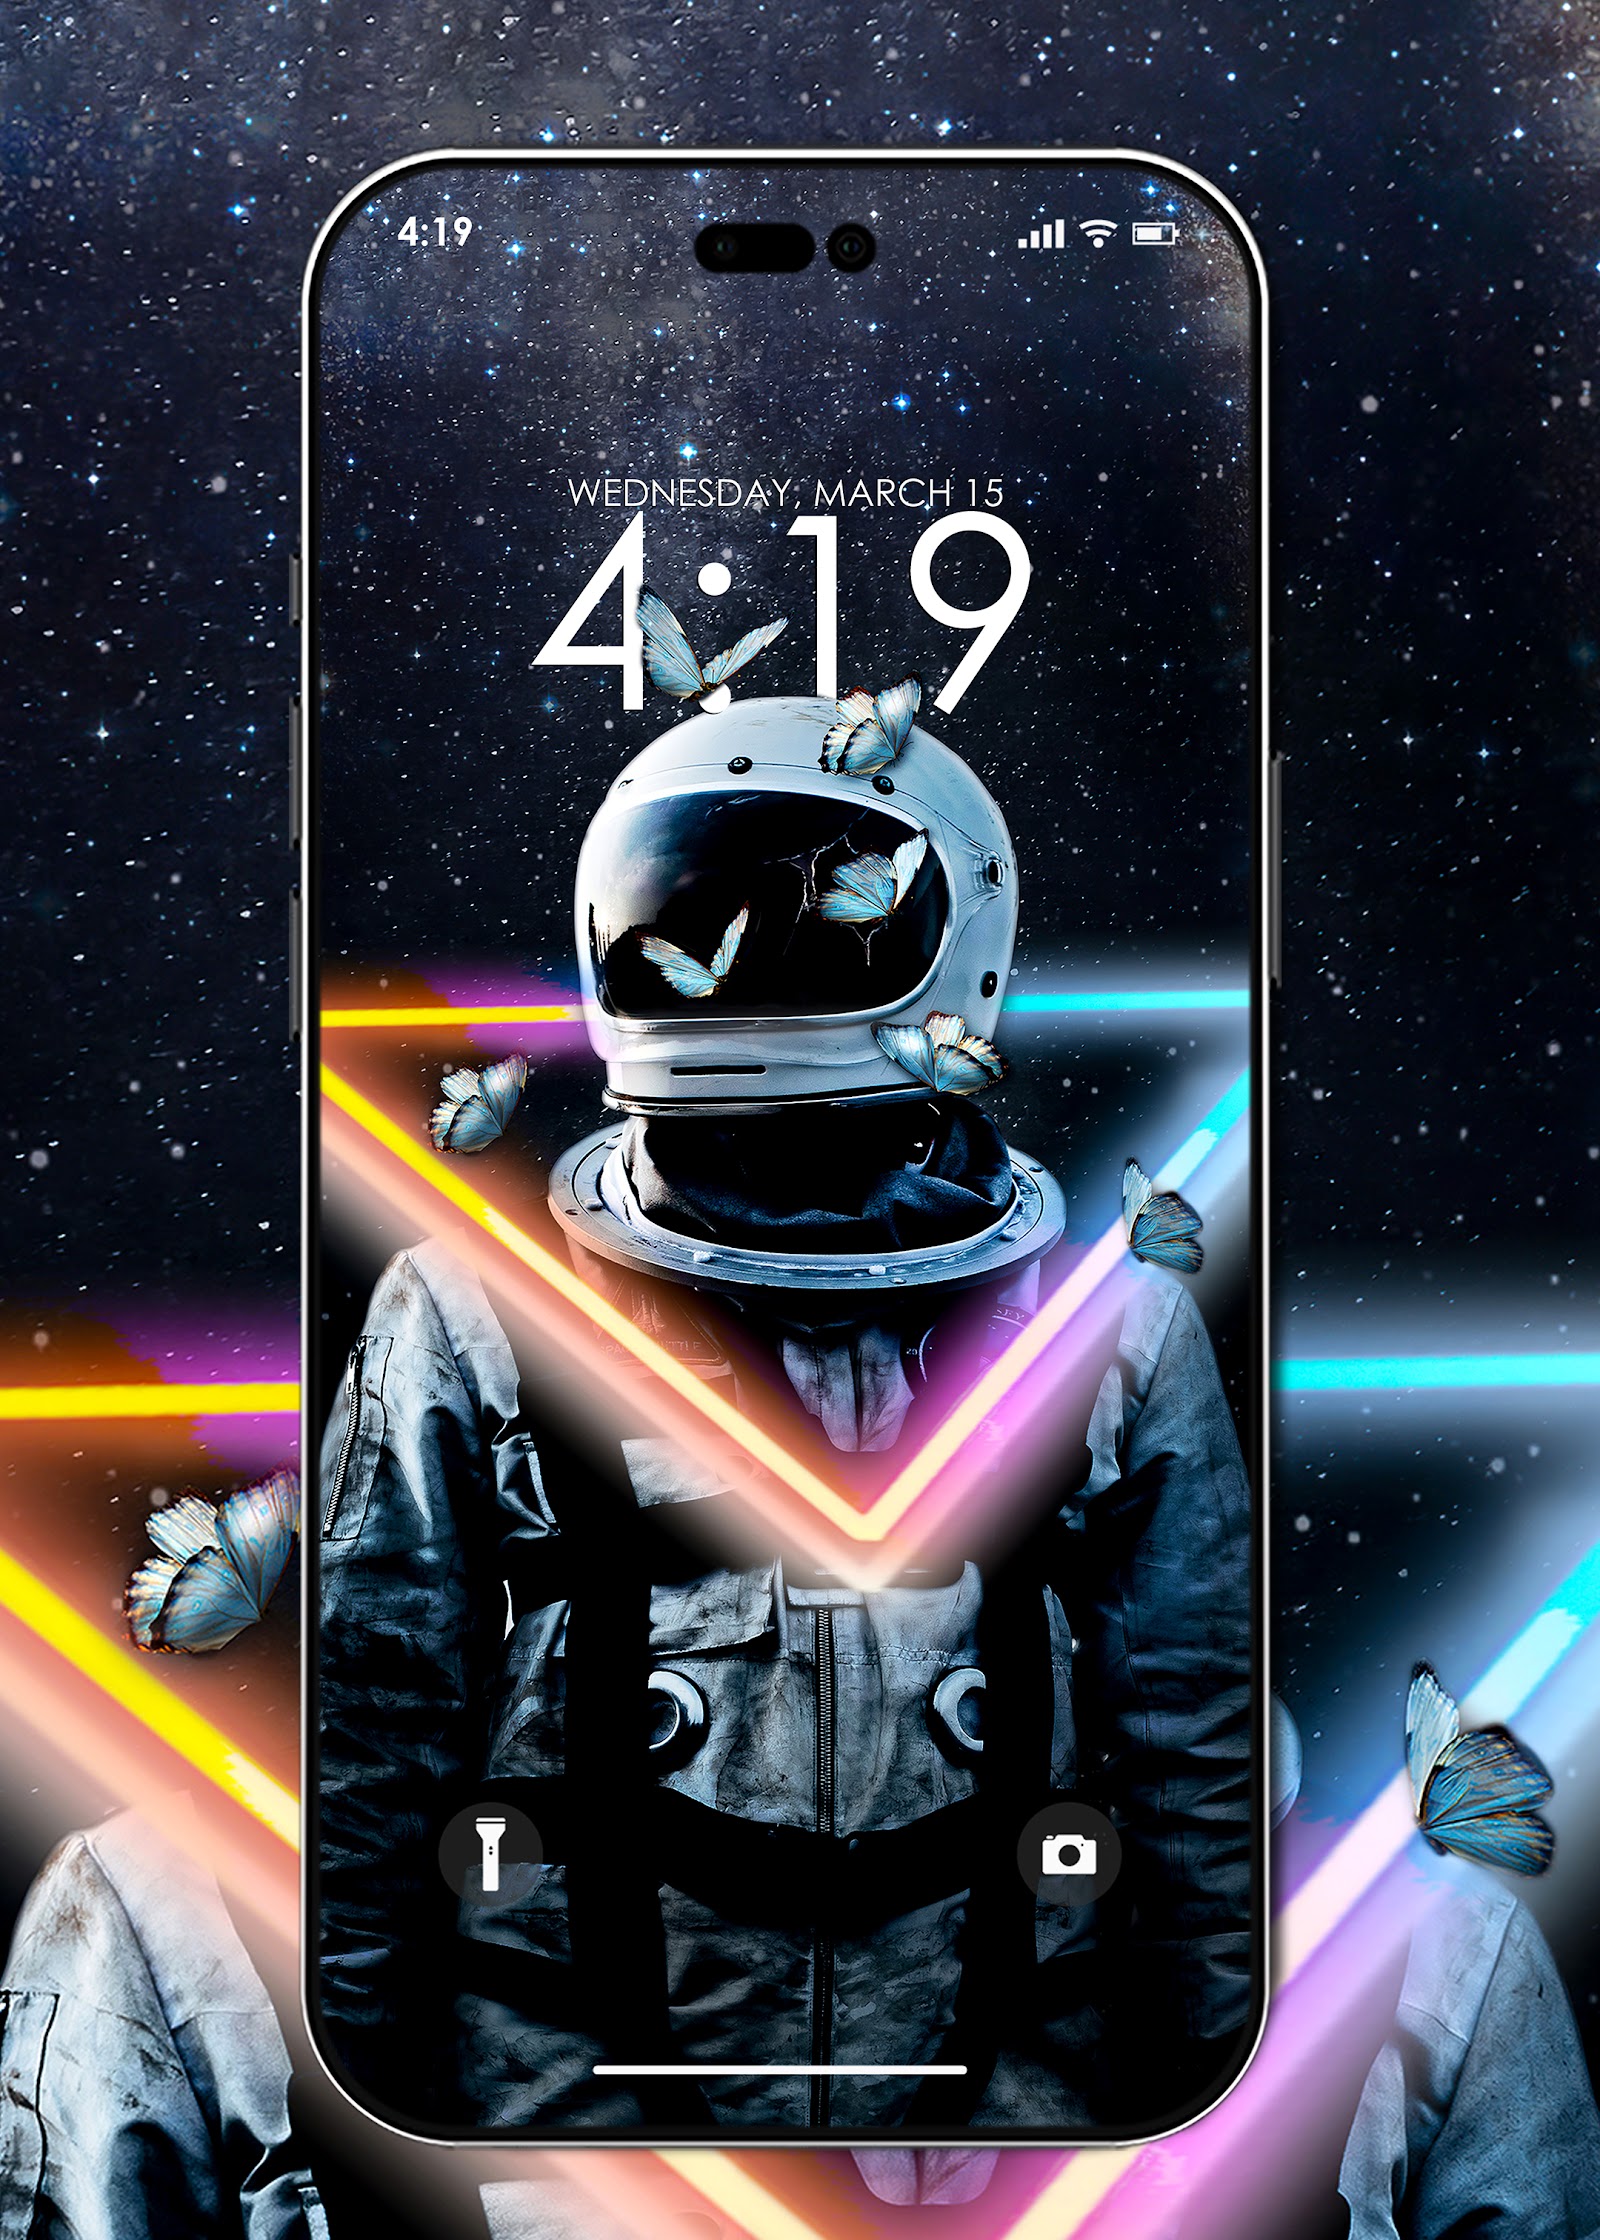 Hình nền Astronaut cho iPhone sẽ mang đến cho bạn cảm giác thực sự như đang khám phá không gian vũ trụ mỗi khi mở khóa điện thoại. Được thiết kế độc đáo và sắc nét, đây chắc chắn sẽ là lựa chọn tuyệt vời cho điện thoại của bạn!